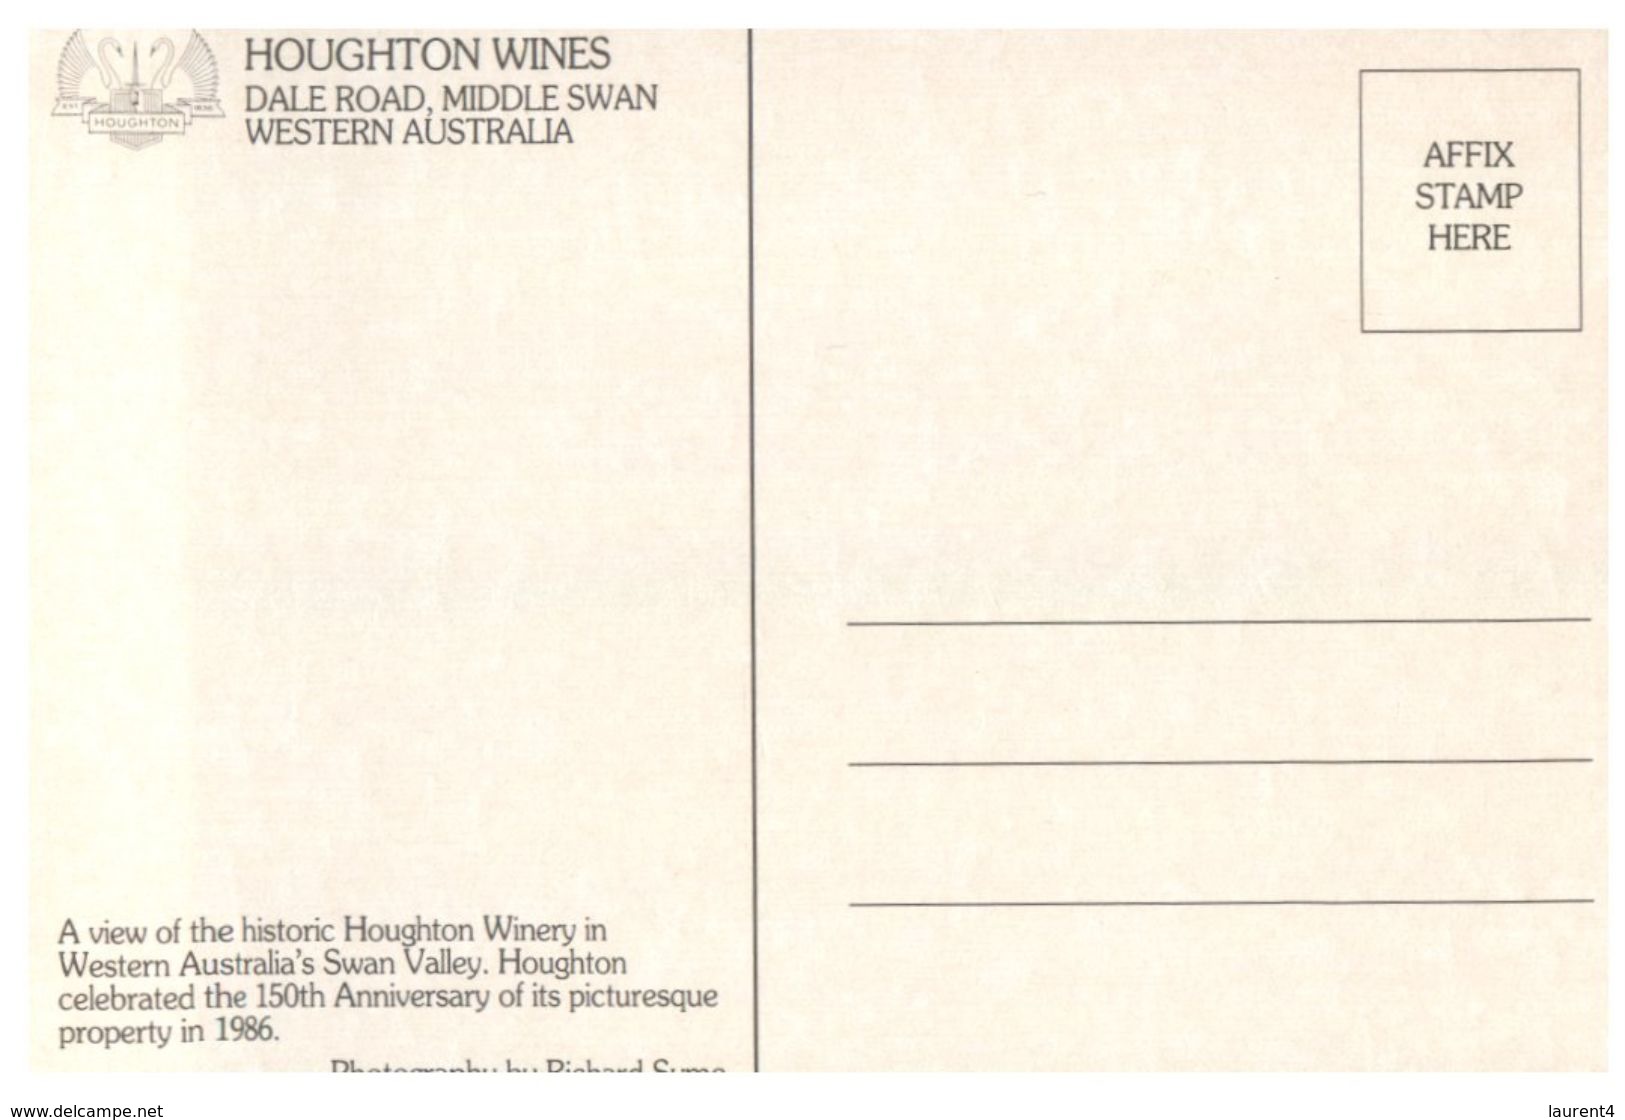 (203) Australia - WA - Houghton Winery - Geraldton